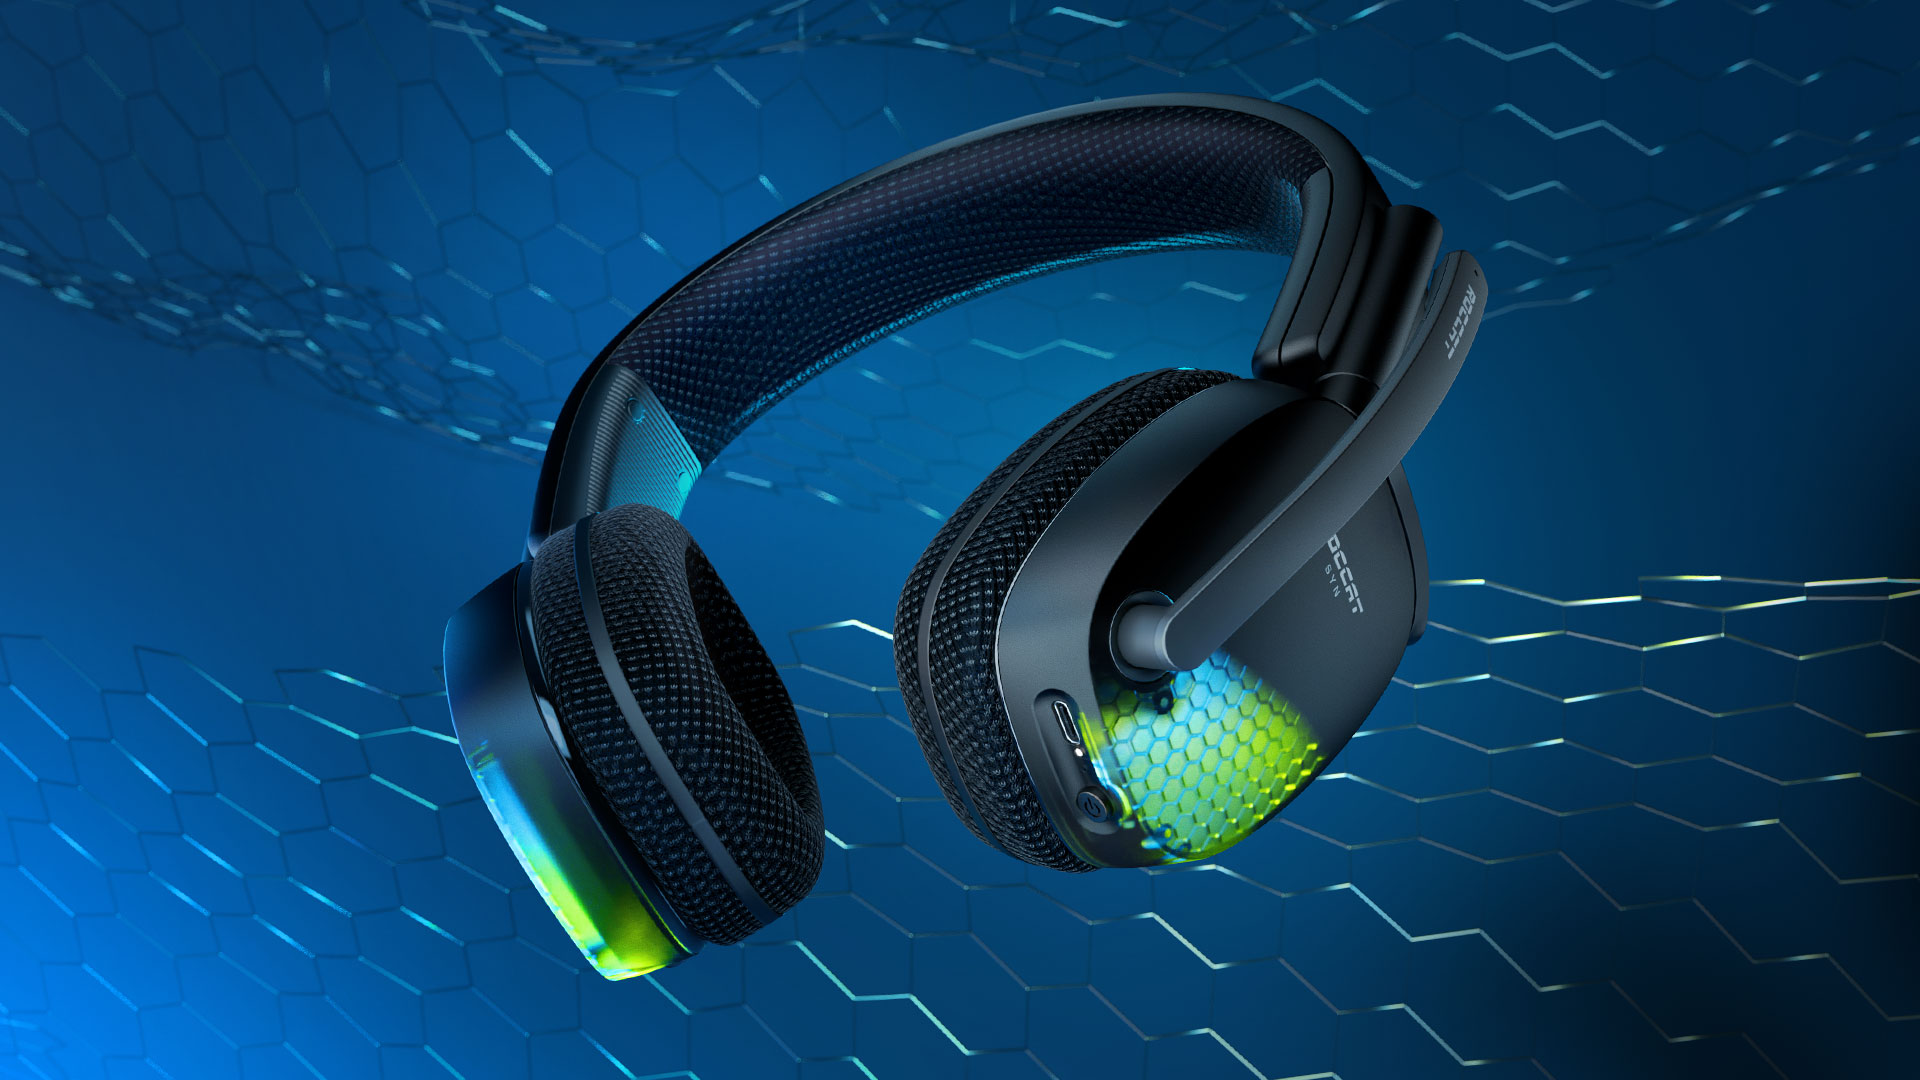 ROCCAT ha anunciado los nuevos auriculares gaming de PC premium inalámbricos Syn Pro Air. Los Syn Pro Air son una incorporación nueva